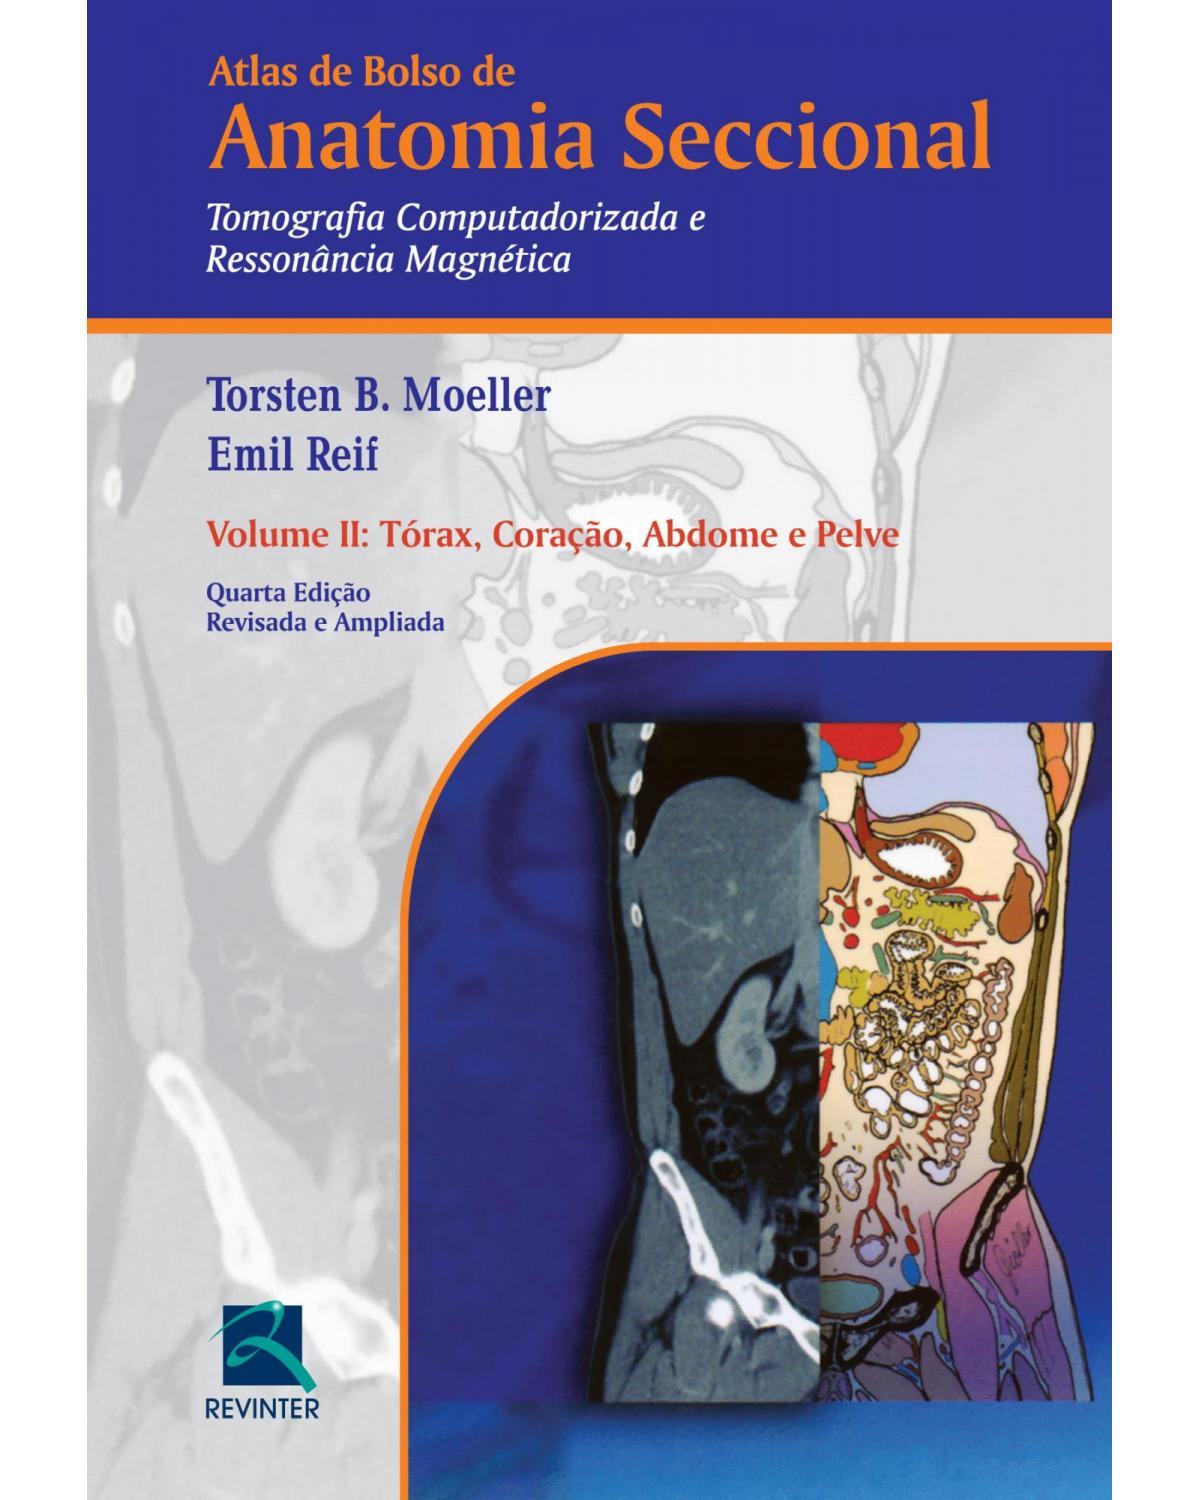 Atlas de bolso de anatomia seccional - Volume 2: tomografia computadorizada e ressonância magnética - Tórax, coração, abdome e pelve - 4ª Edição | 2016